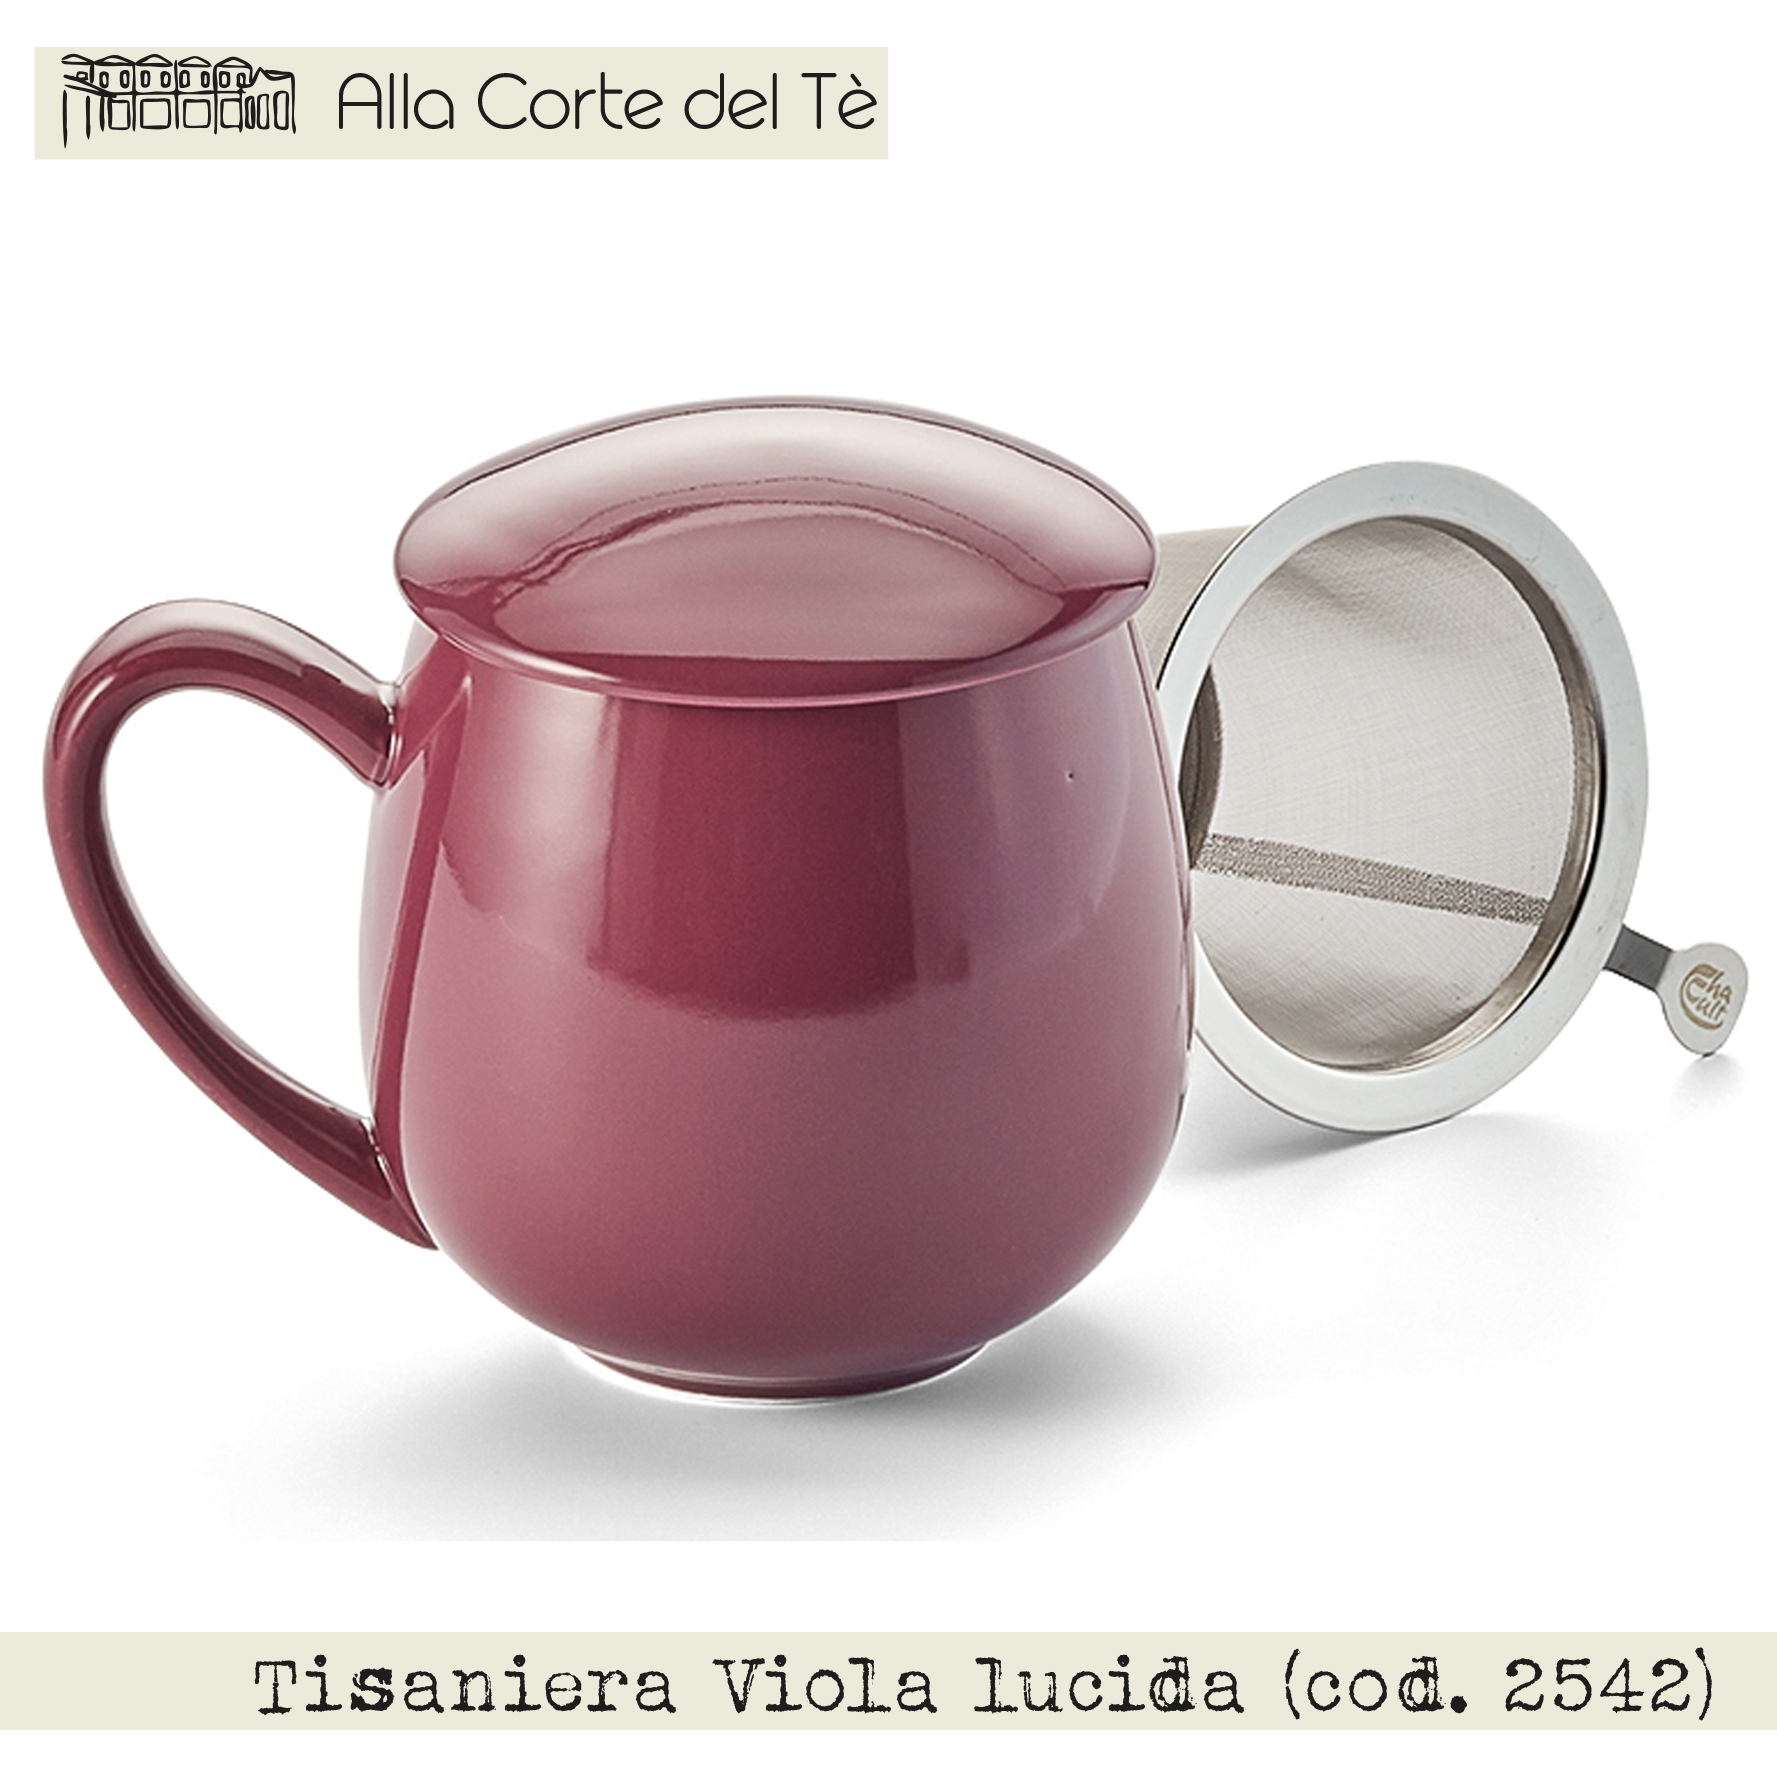 Tisaniera Viola lucida (cod. 2542) - Alla Corte del Tè